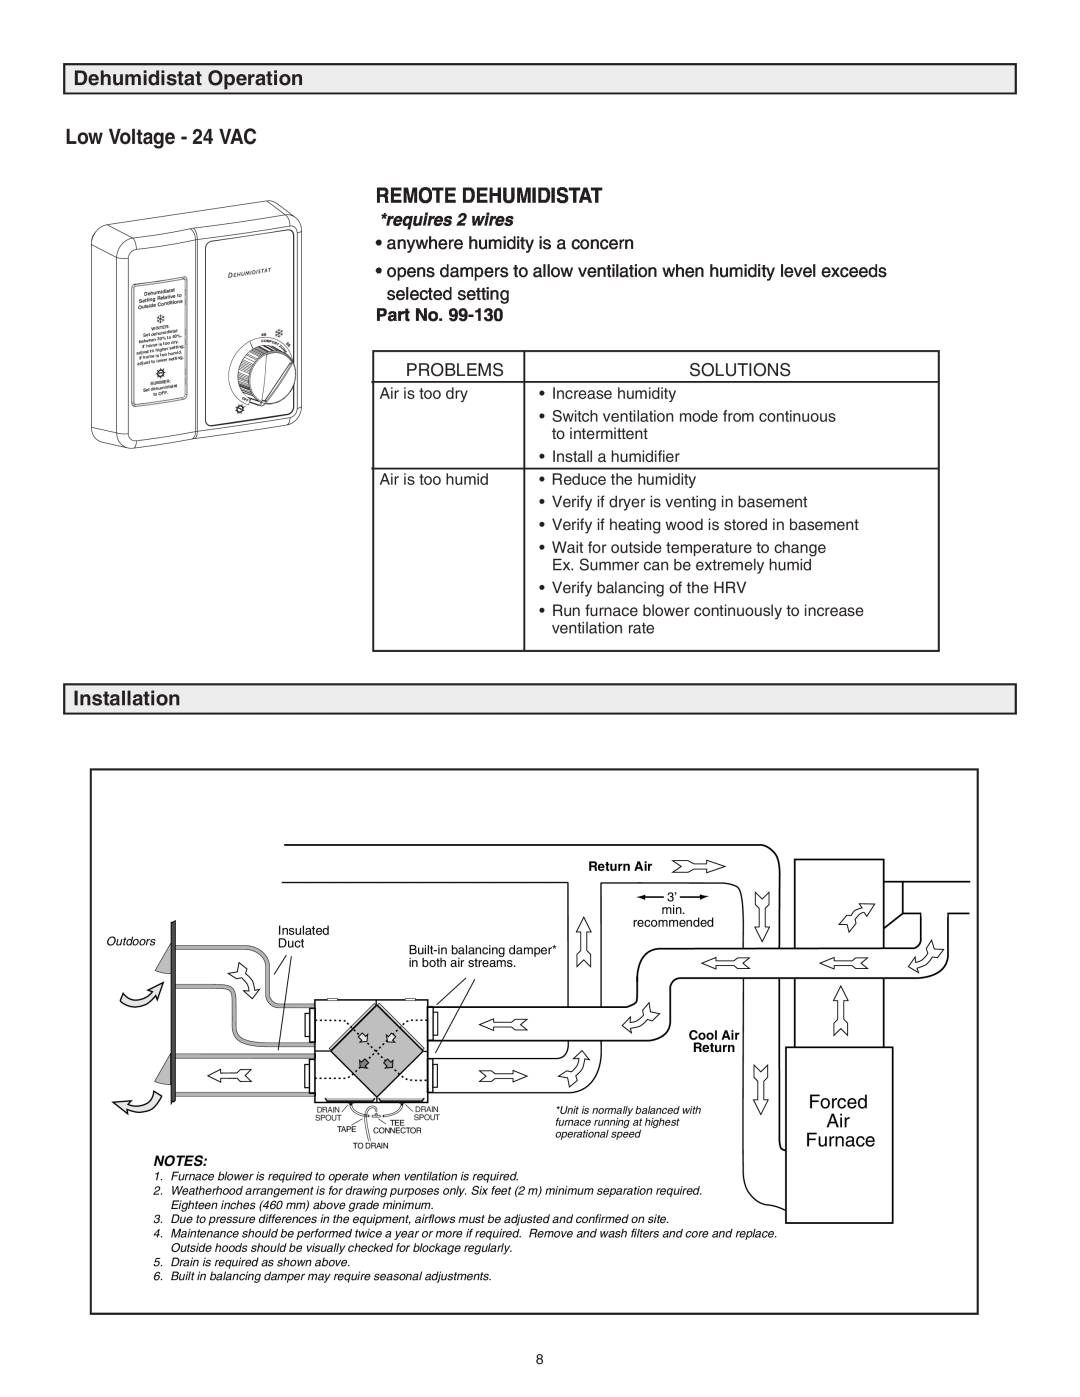 Lifebreath 94-EXCHANGER Low Voltage - 24 VAC, Remote Dehumidistat, Dehumidistat Operation, requires 2 wires, Installation 